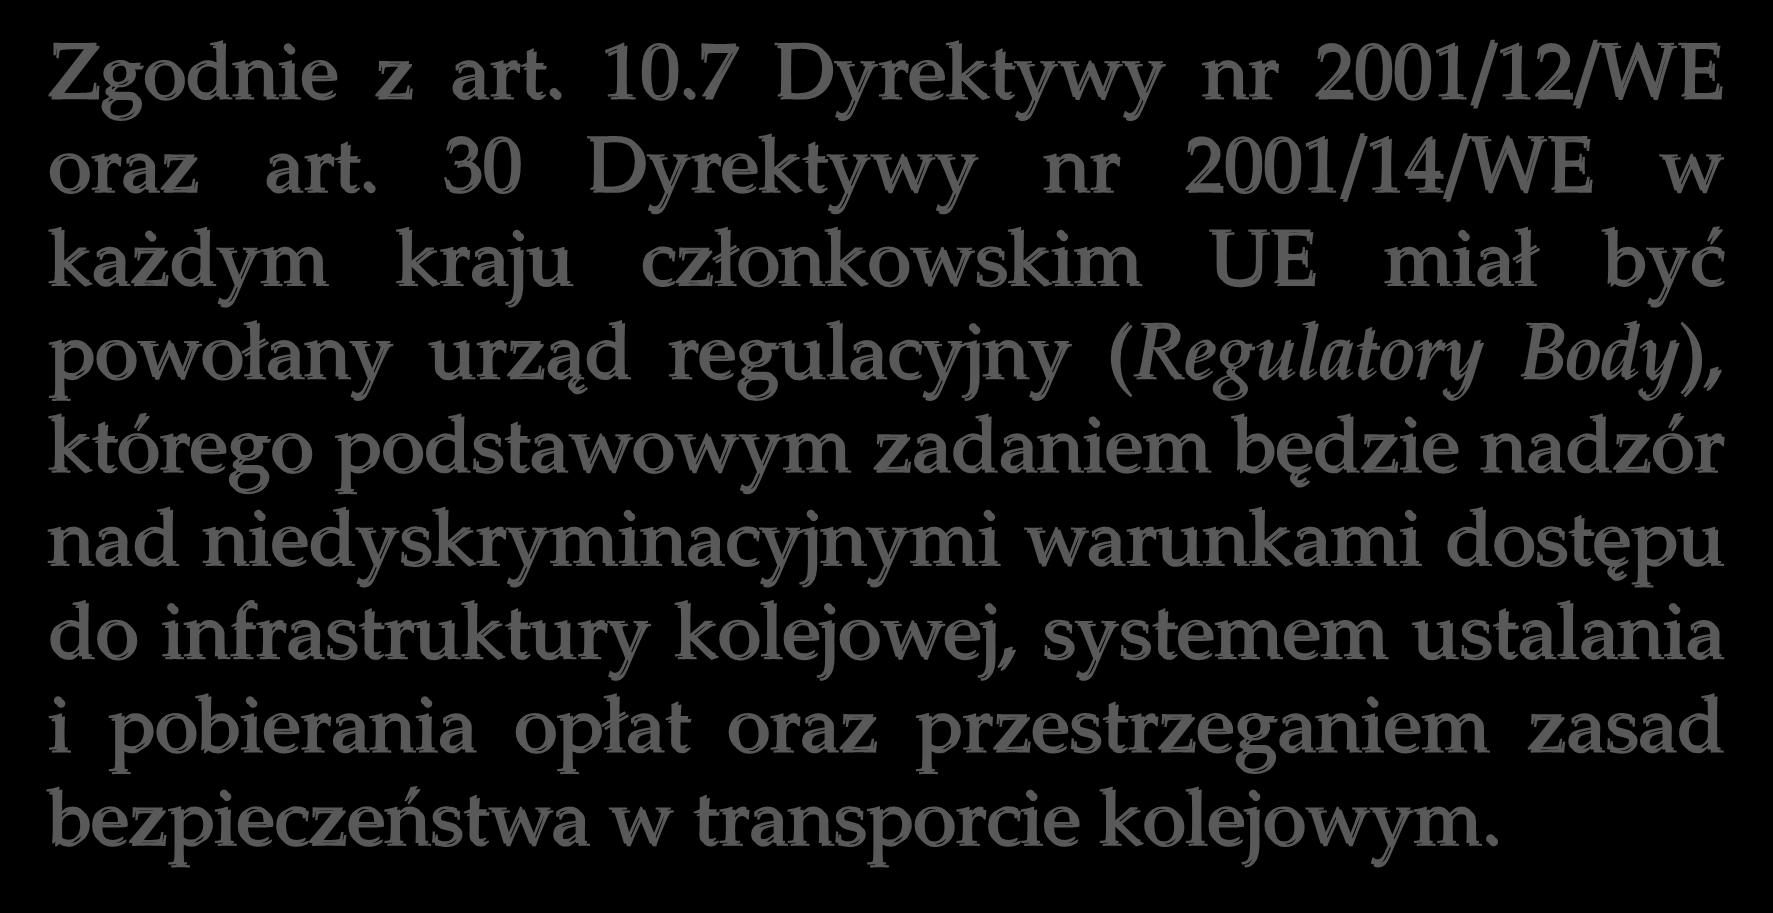 Zgodnie z art. 10.7 Dyrektywy nr 2001/12/WE oraz art.